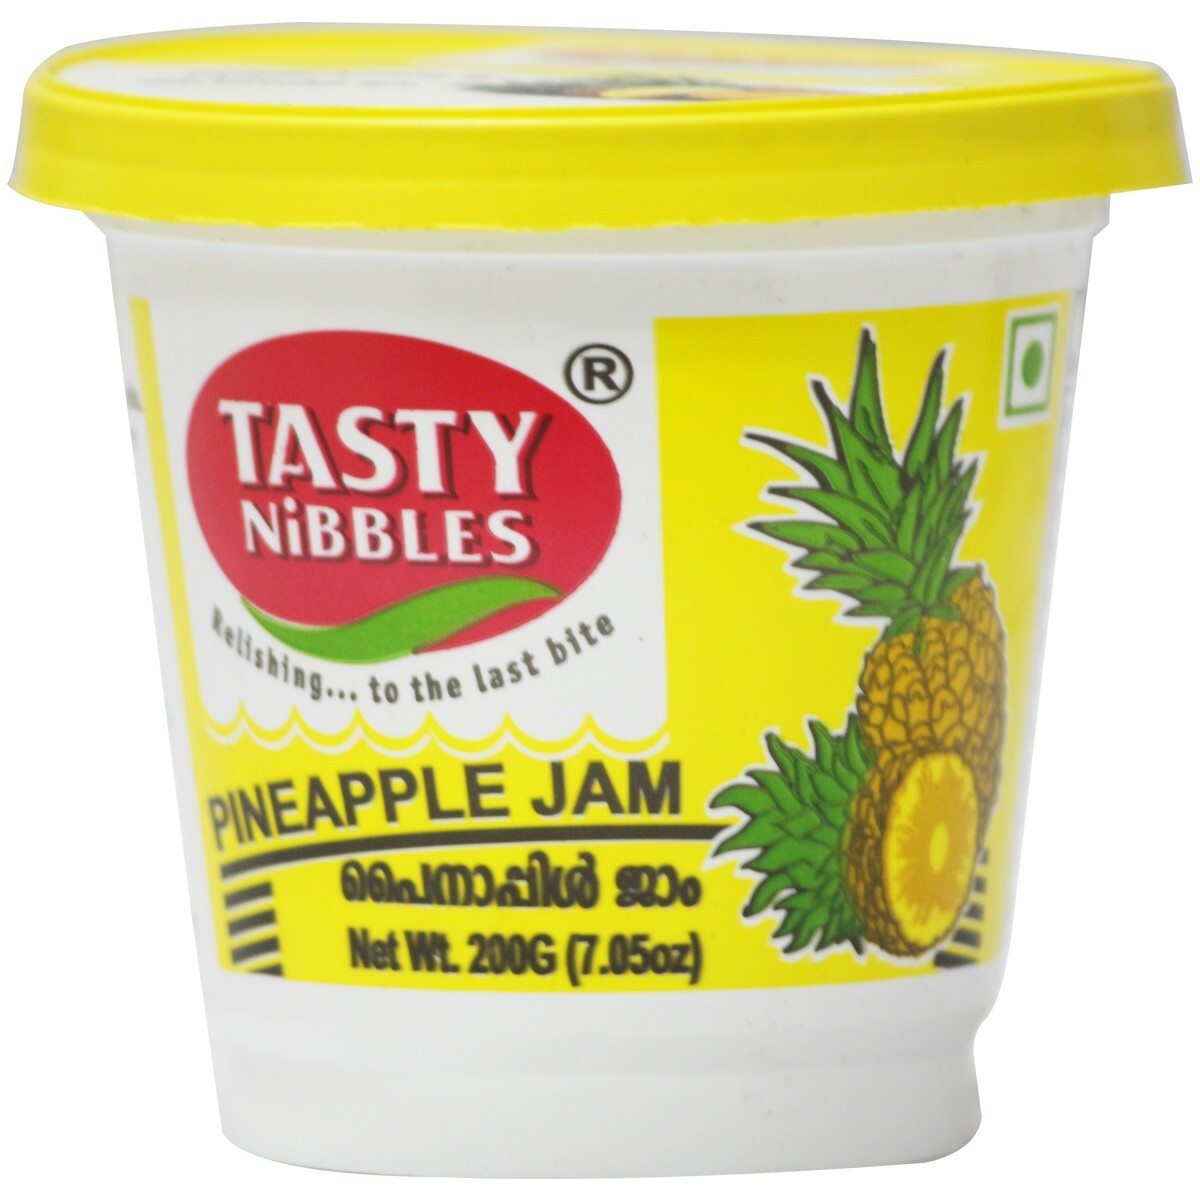 Tasty Nibbles Pineapple Jam 200g